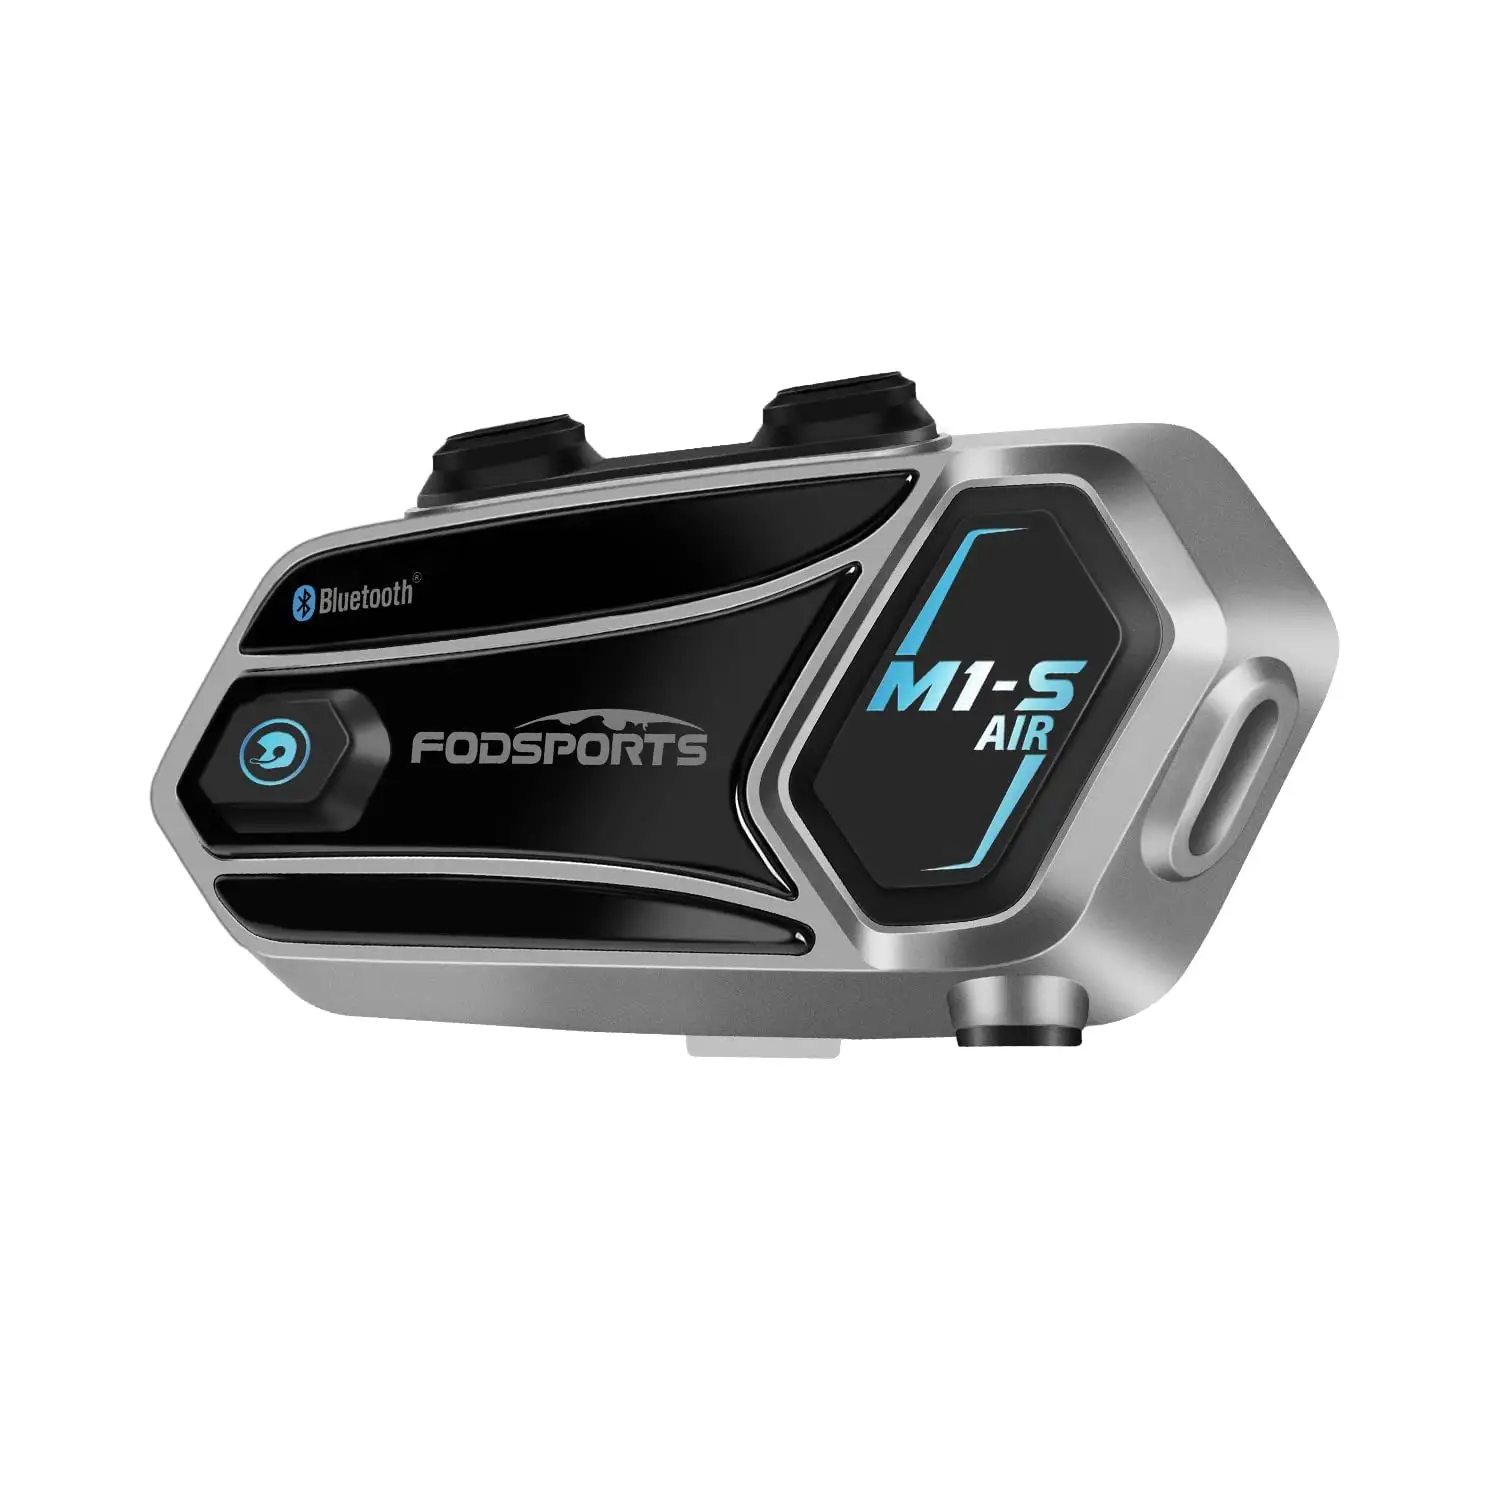 Fodsports M1S-AIR 2 biniciler 1000m kask Bluetooth duafonları müzik paylaşımı ses asistanı Moto kulaklık motosiklet interkom